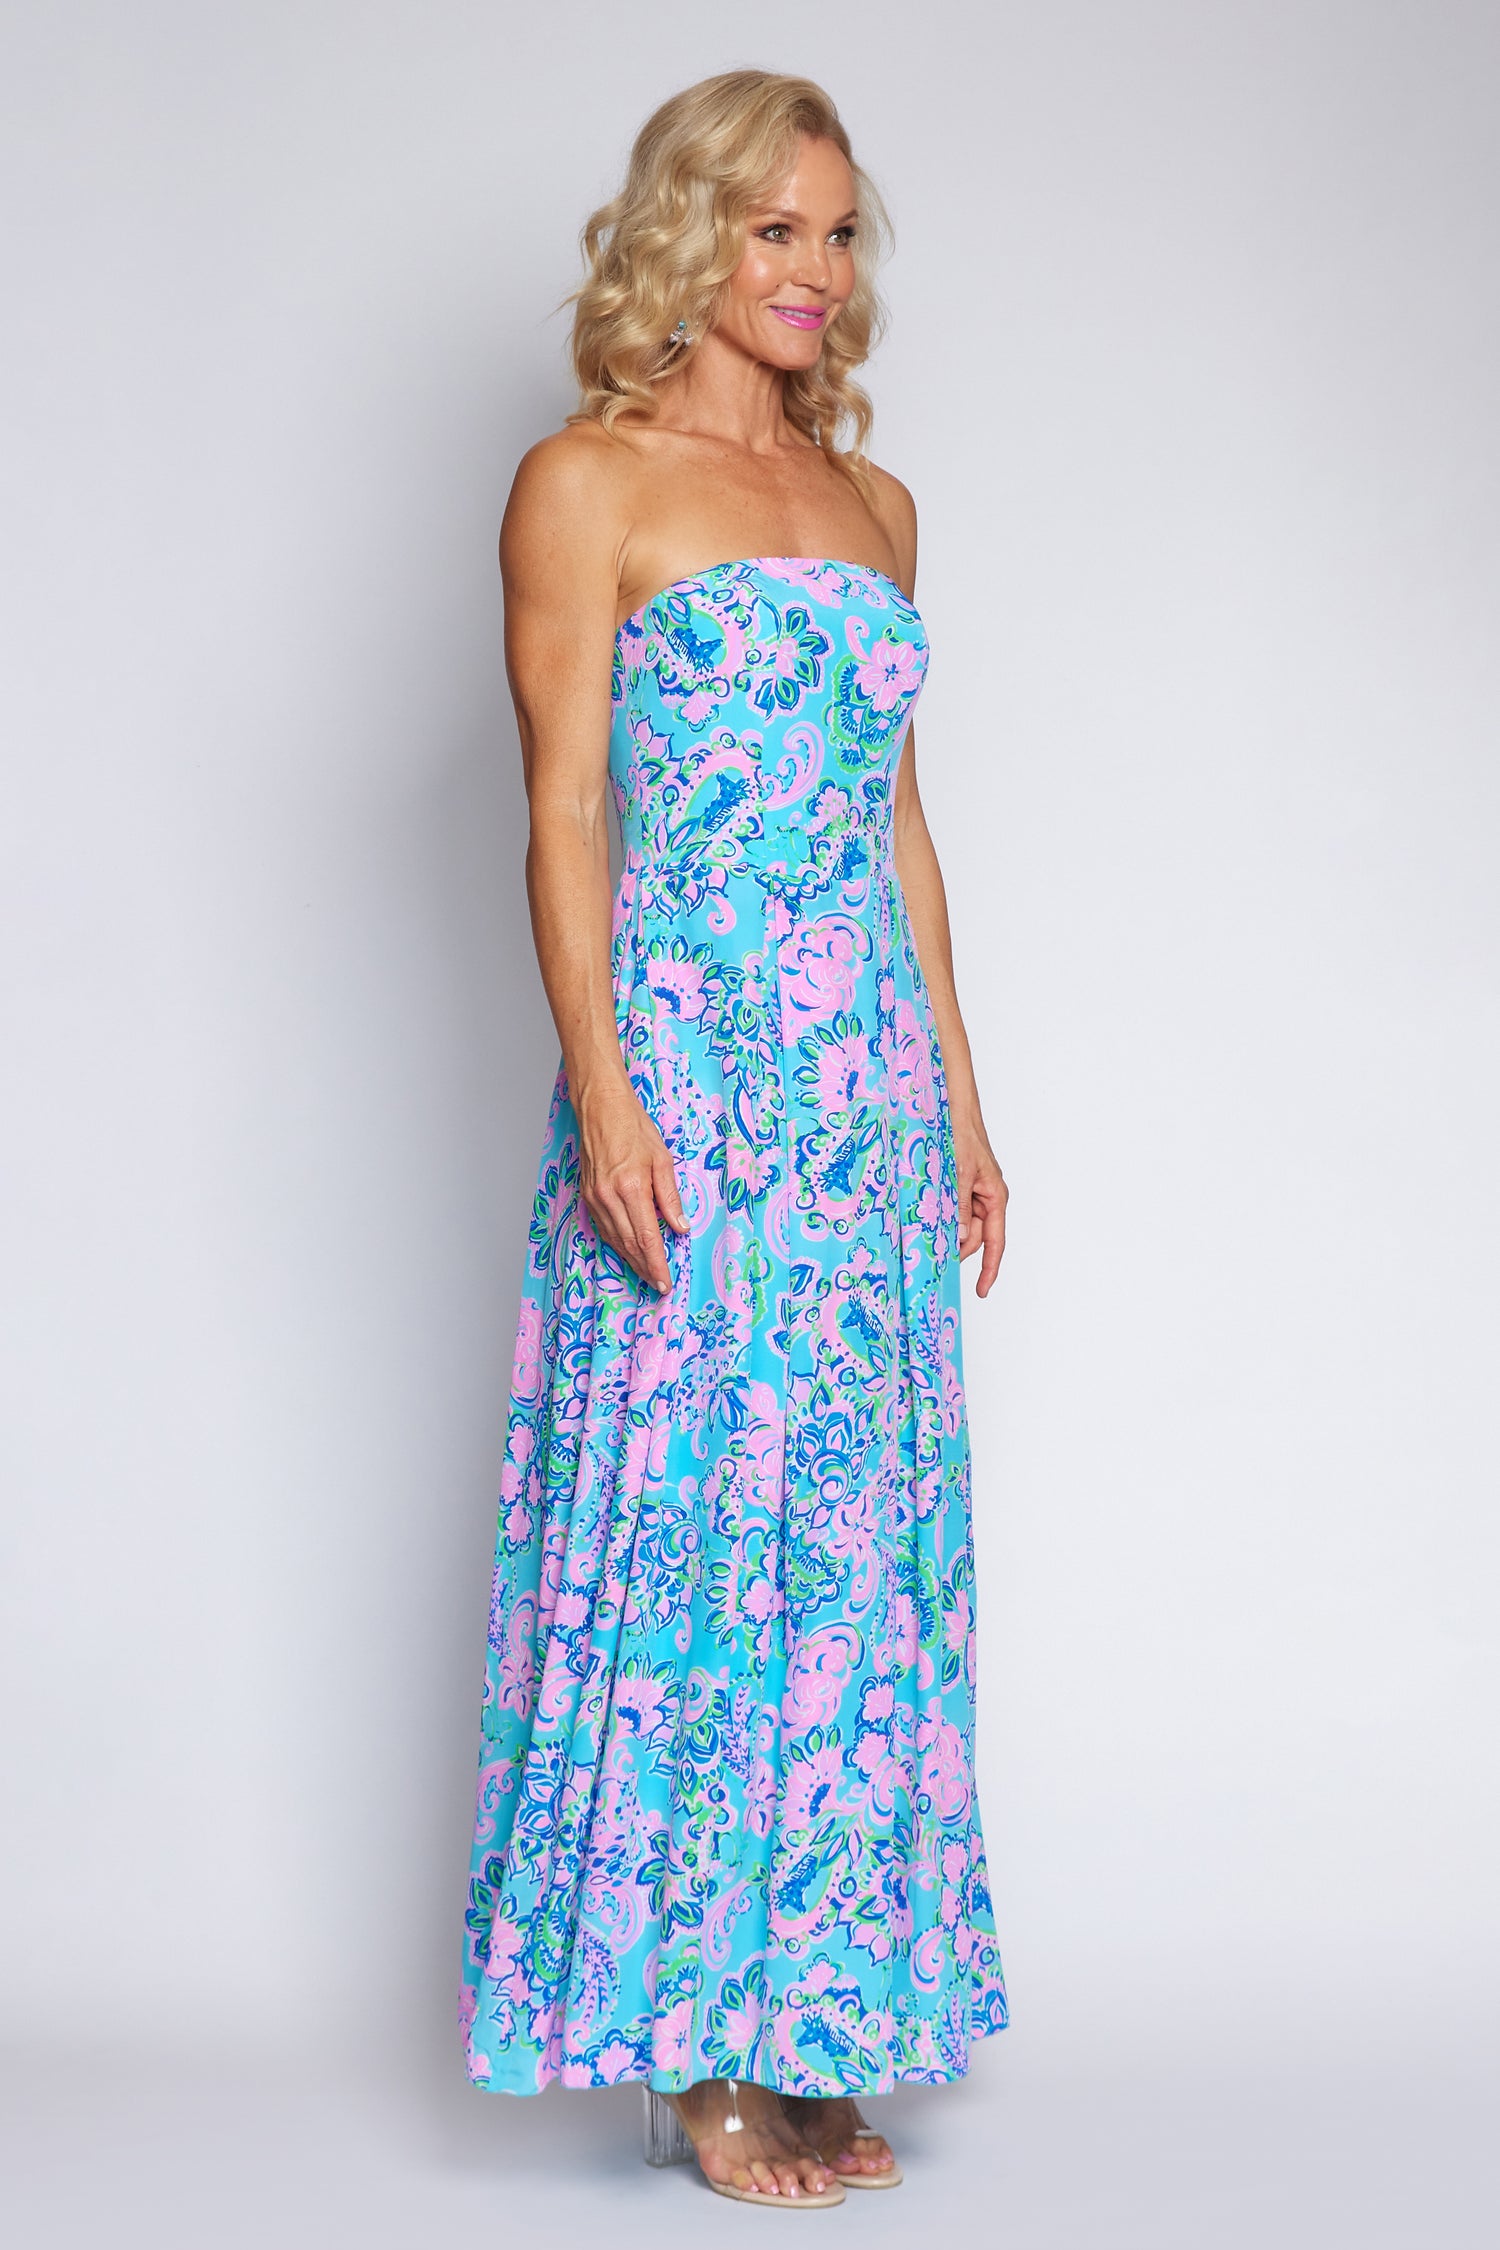 Amalfi Blue and Pink Strapless Dress